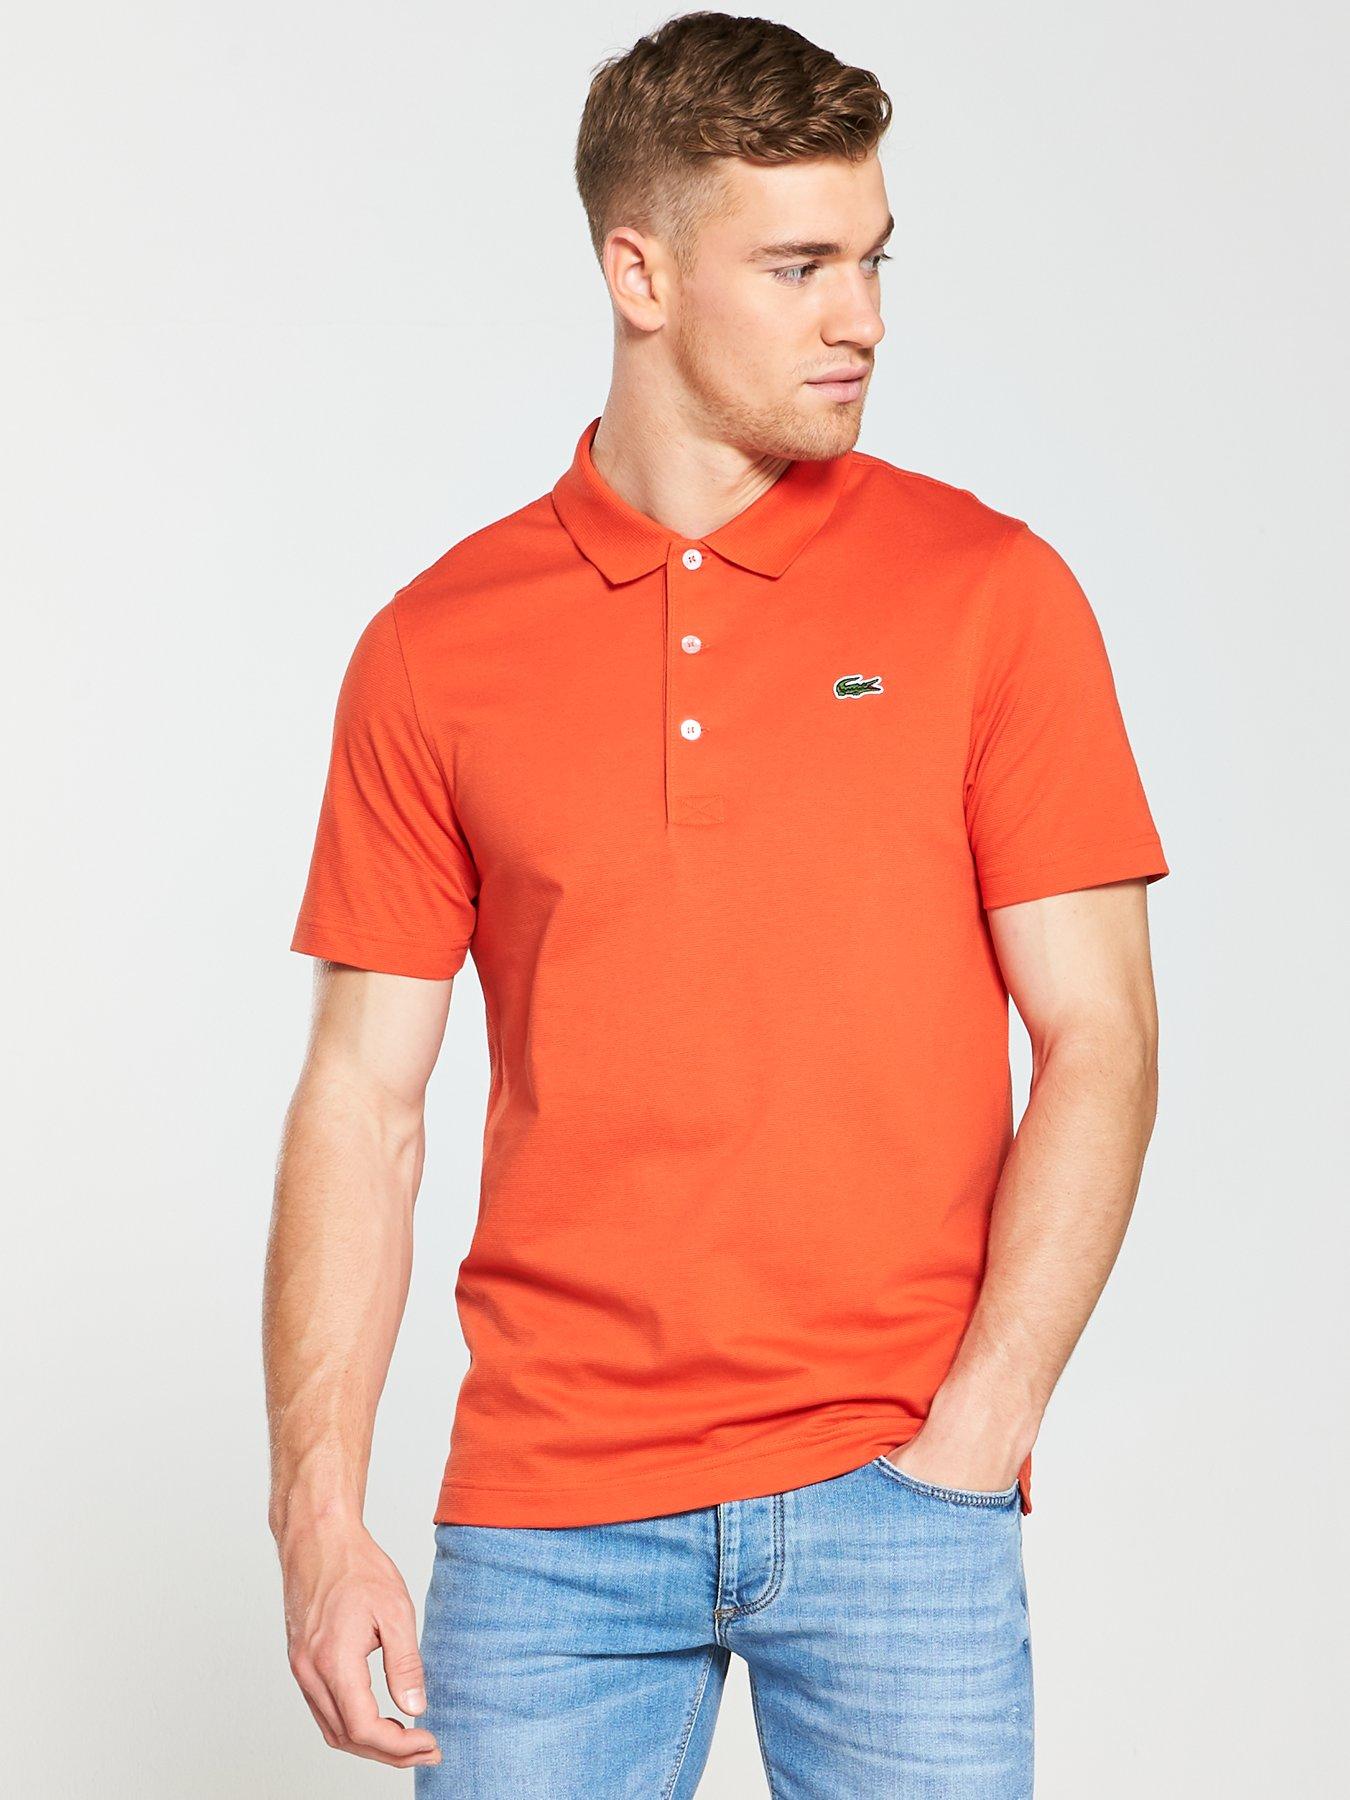 lacoste shirt orange